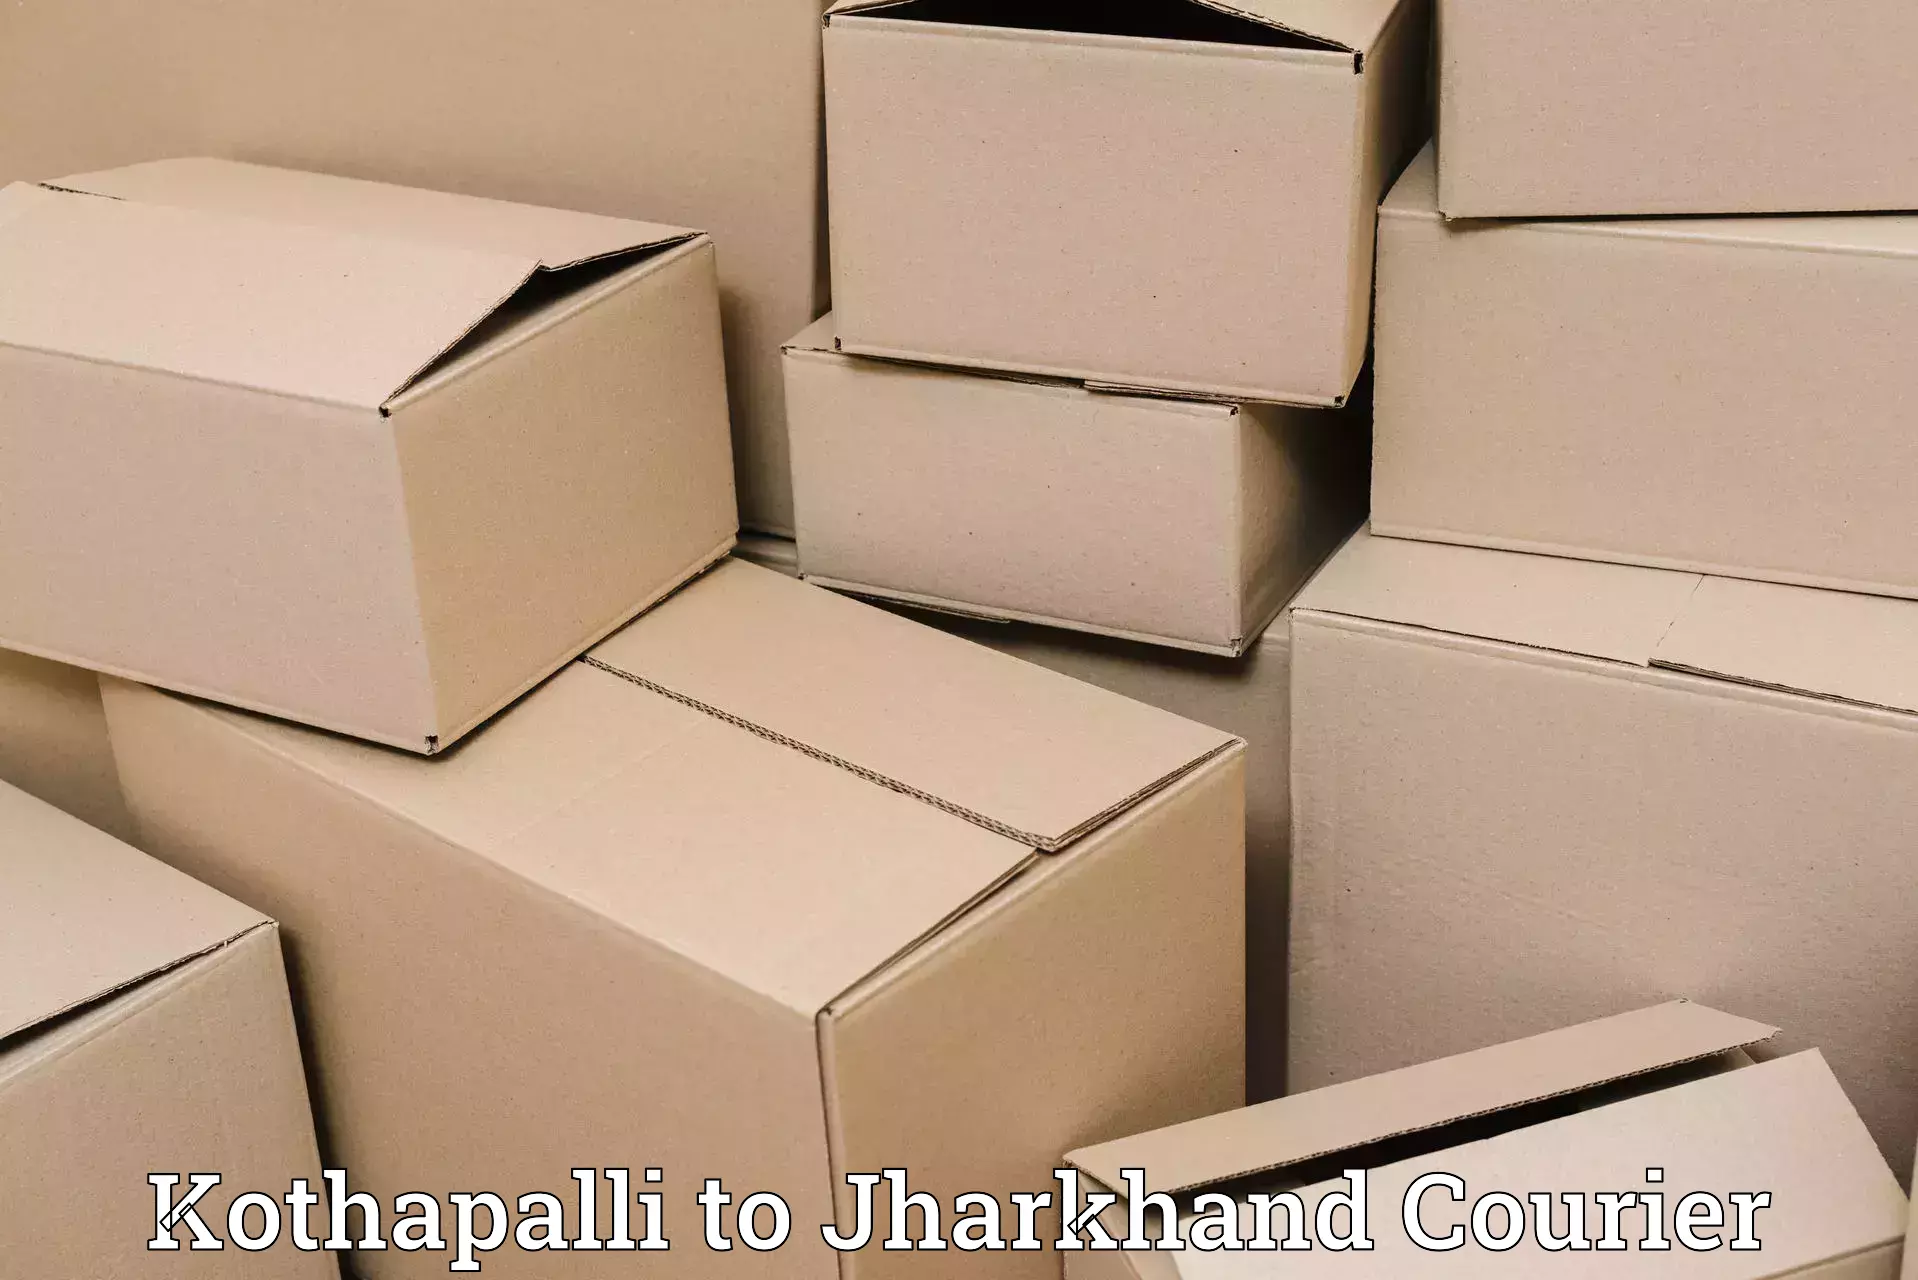 Premium courier services Kothapalli to Tisri